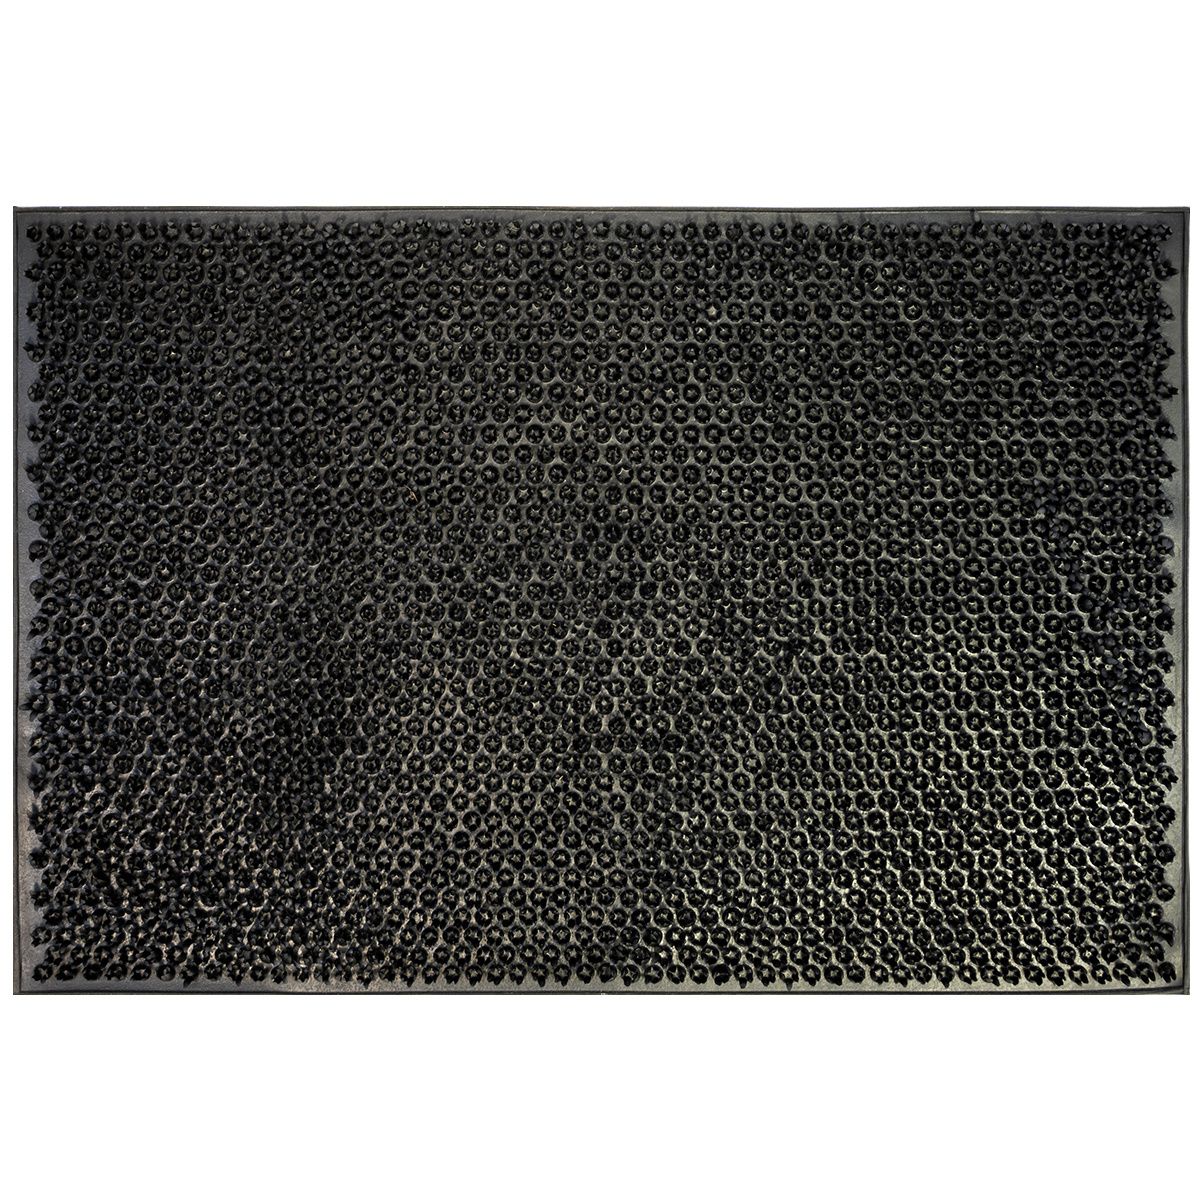 Gumová rohožka Emma černá, 40 x 60 cm - 4home.cz